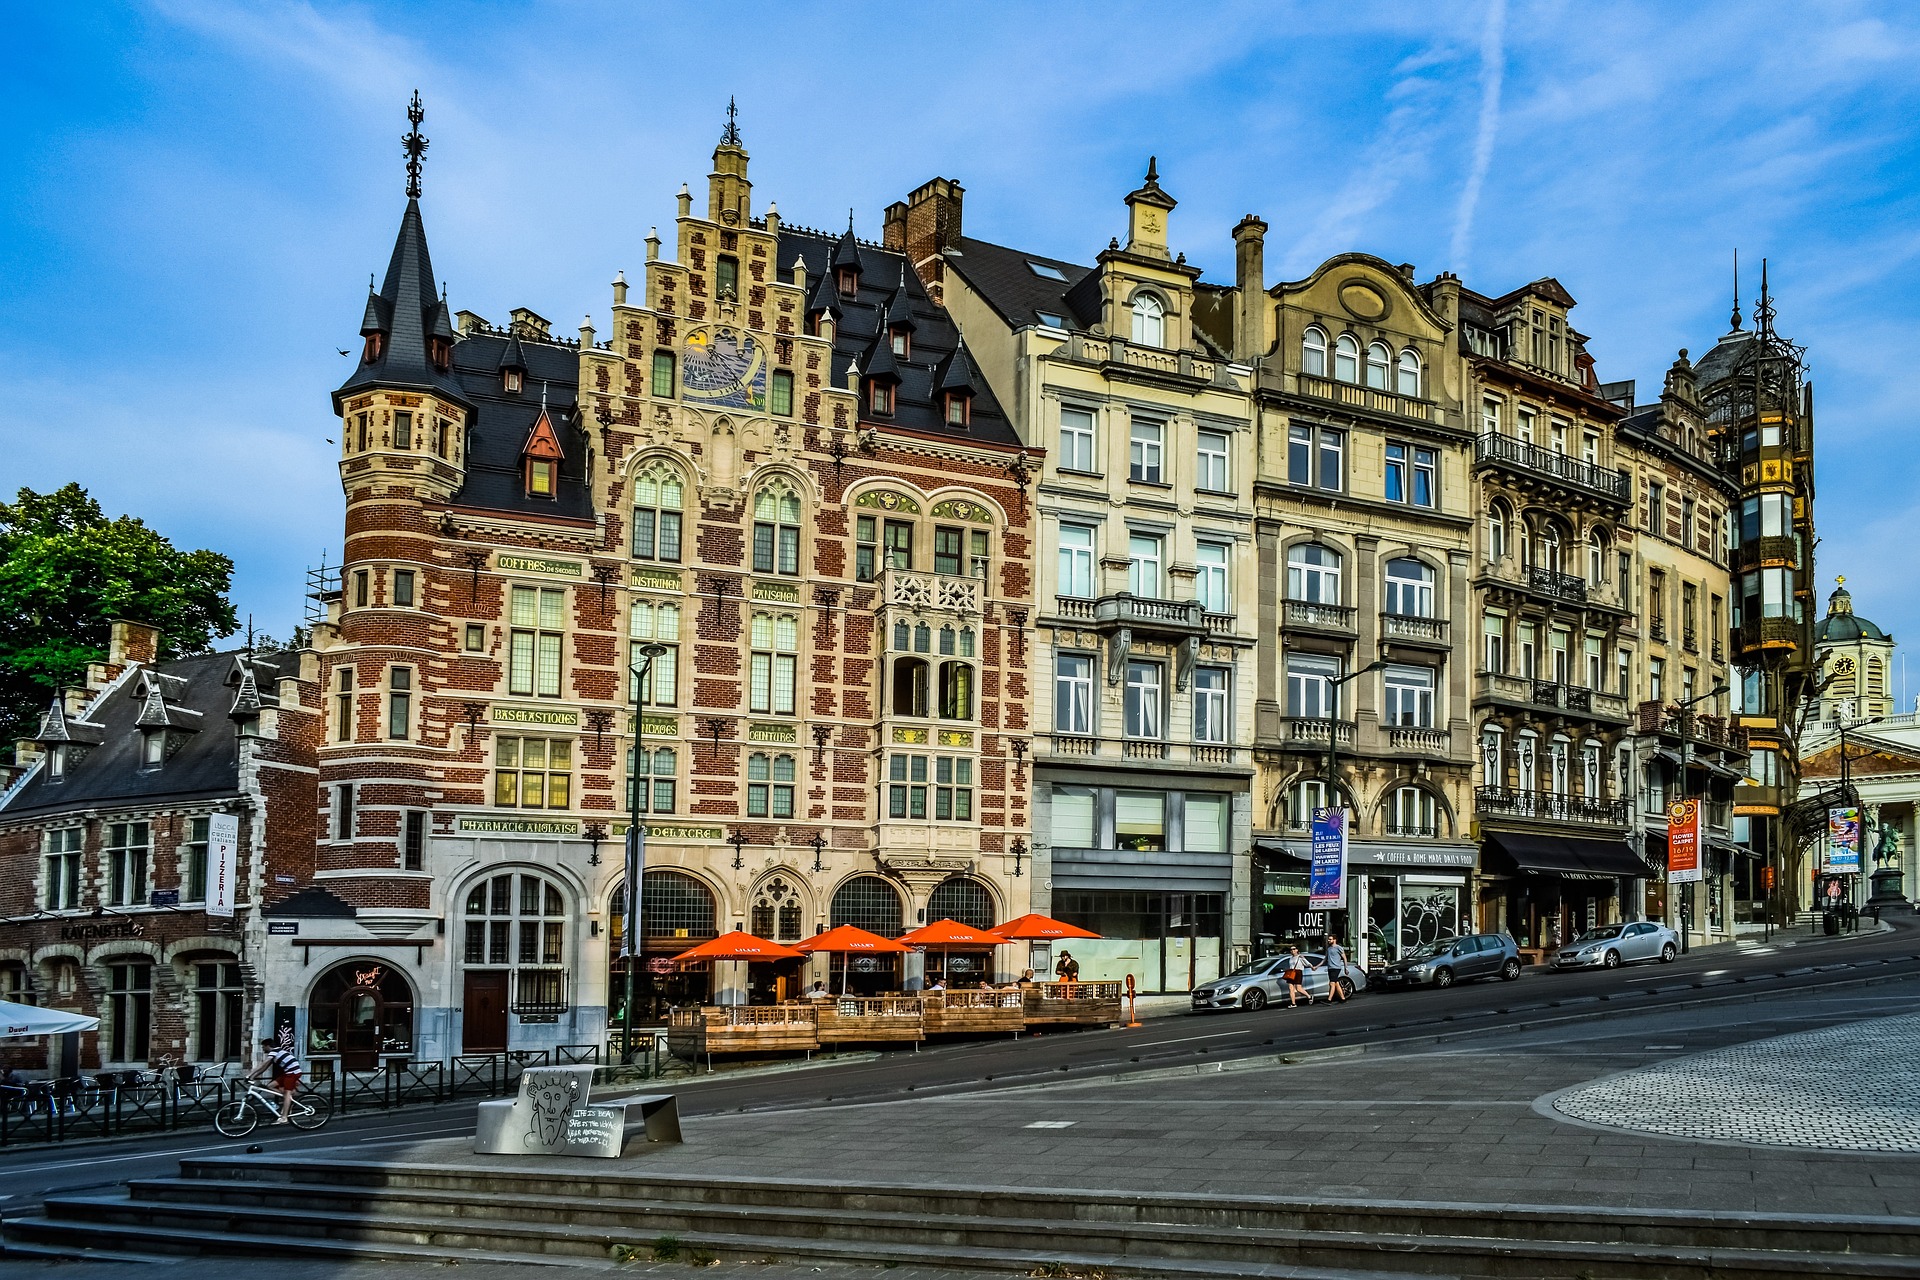 Brussels. (Pixabay license).